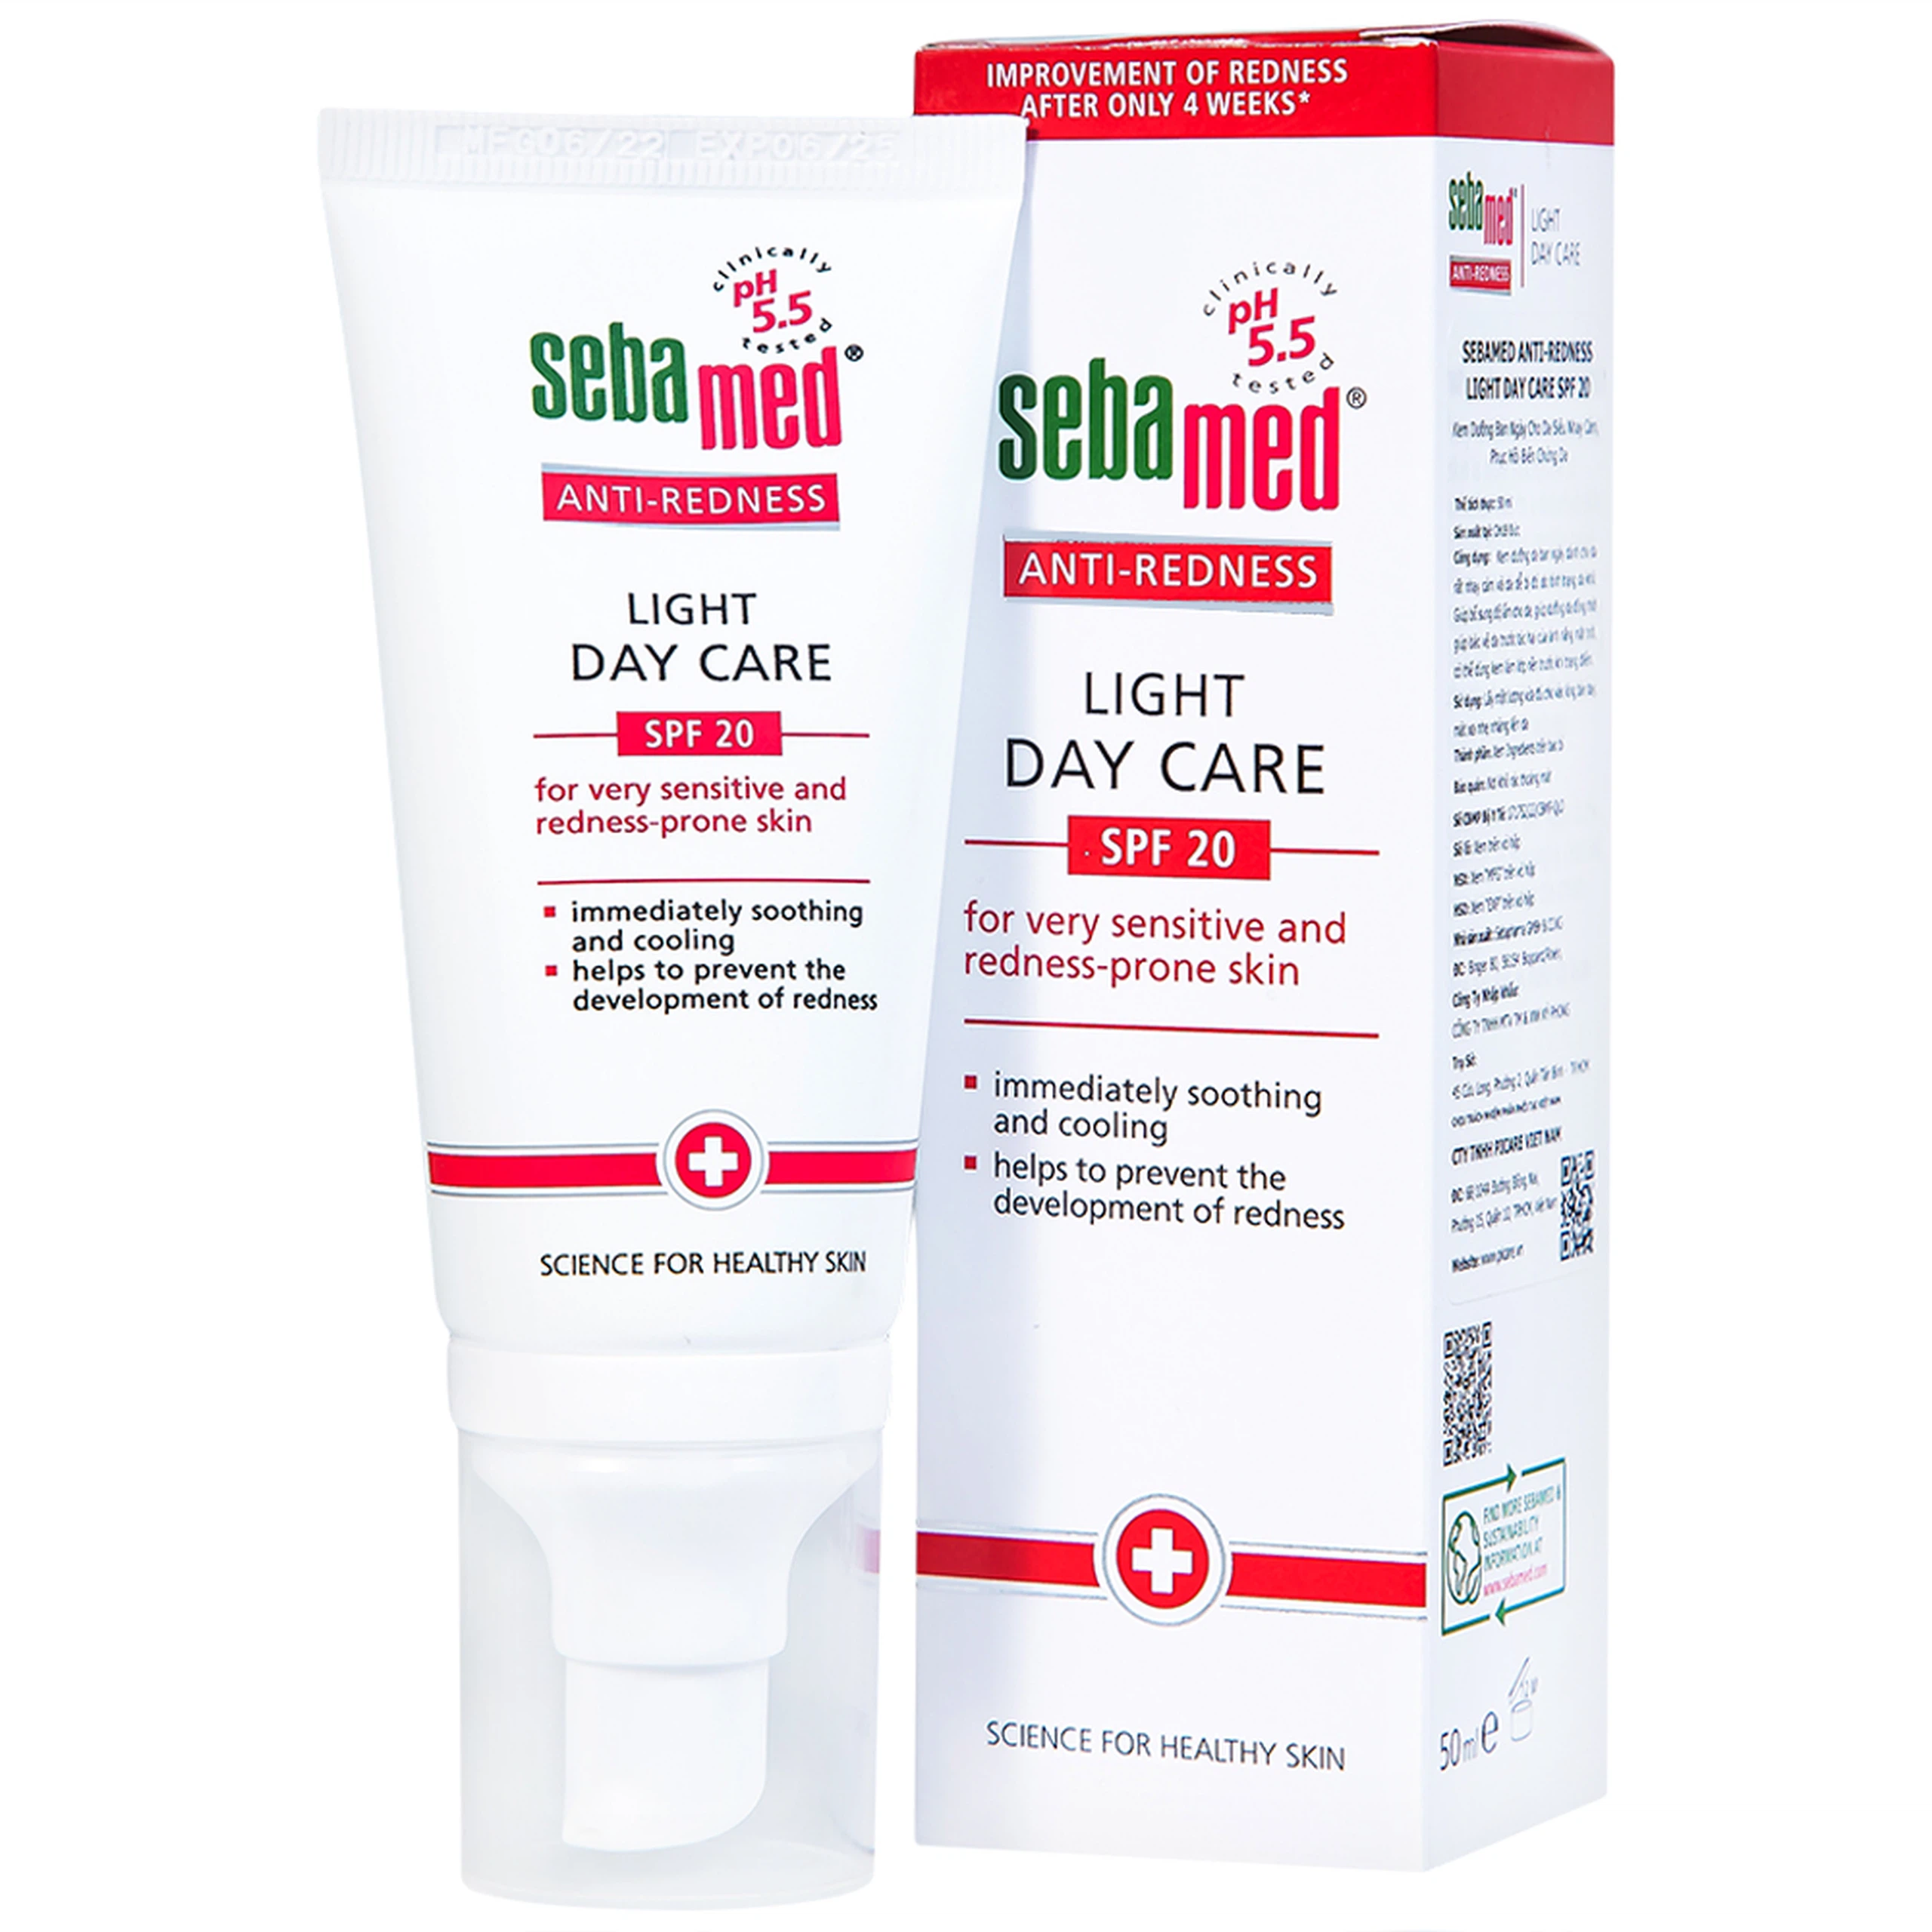 Kem dưỡng ban ngày Sebamed Anti-Redness Light Day Care dành cho da rất nhạy cảm và dễ bị đỏ (50ml)